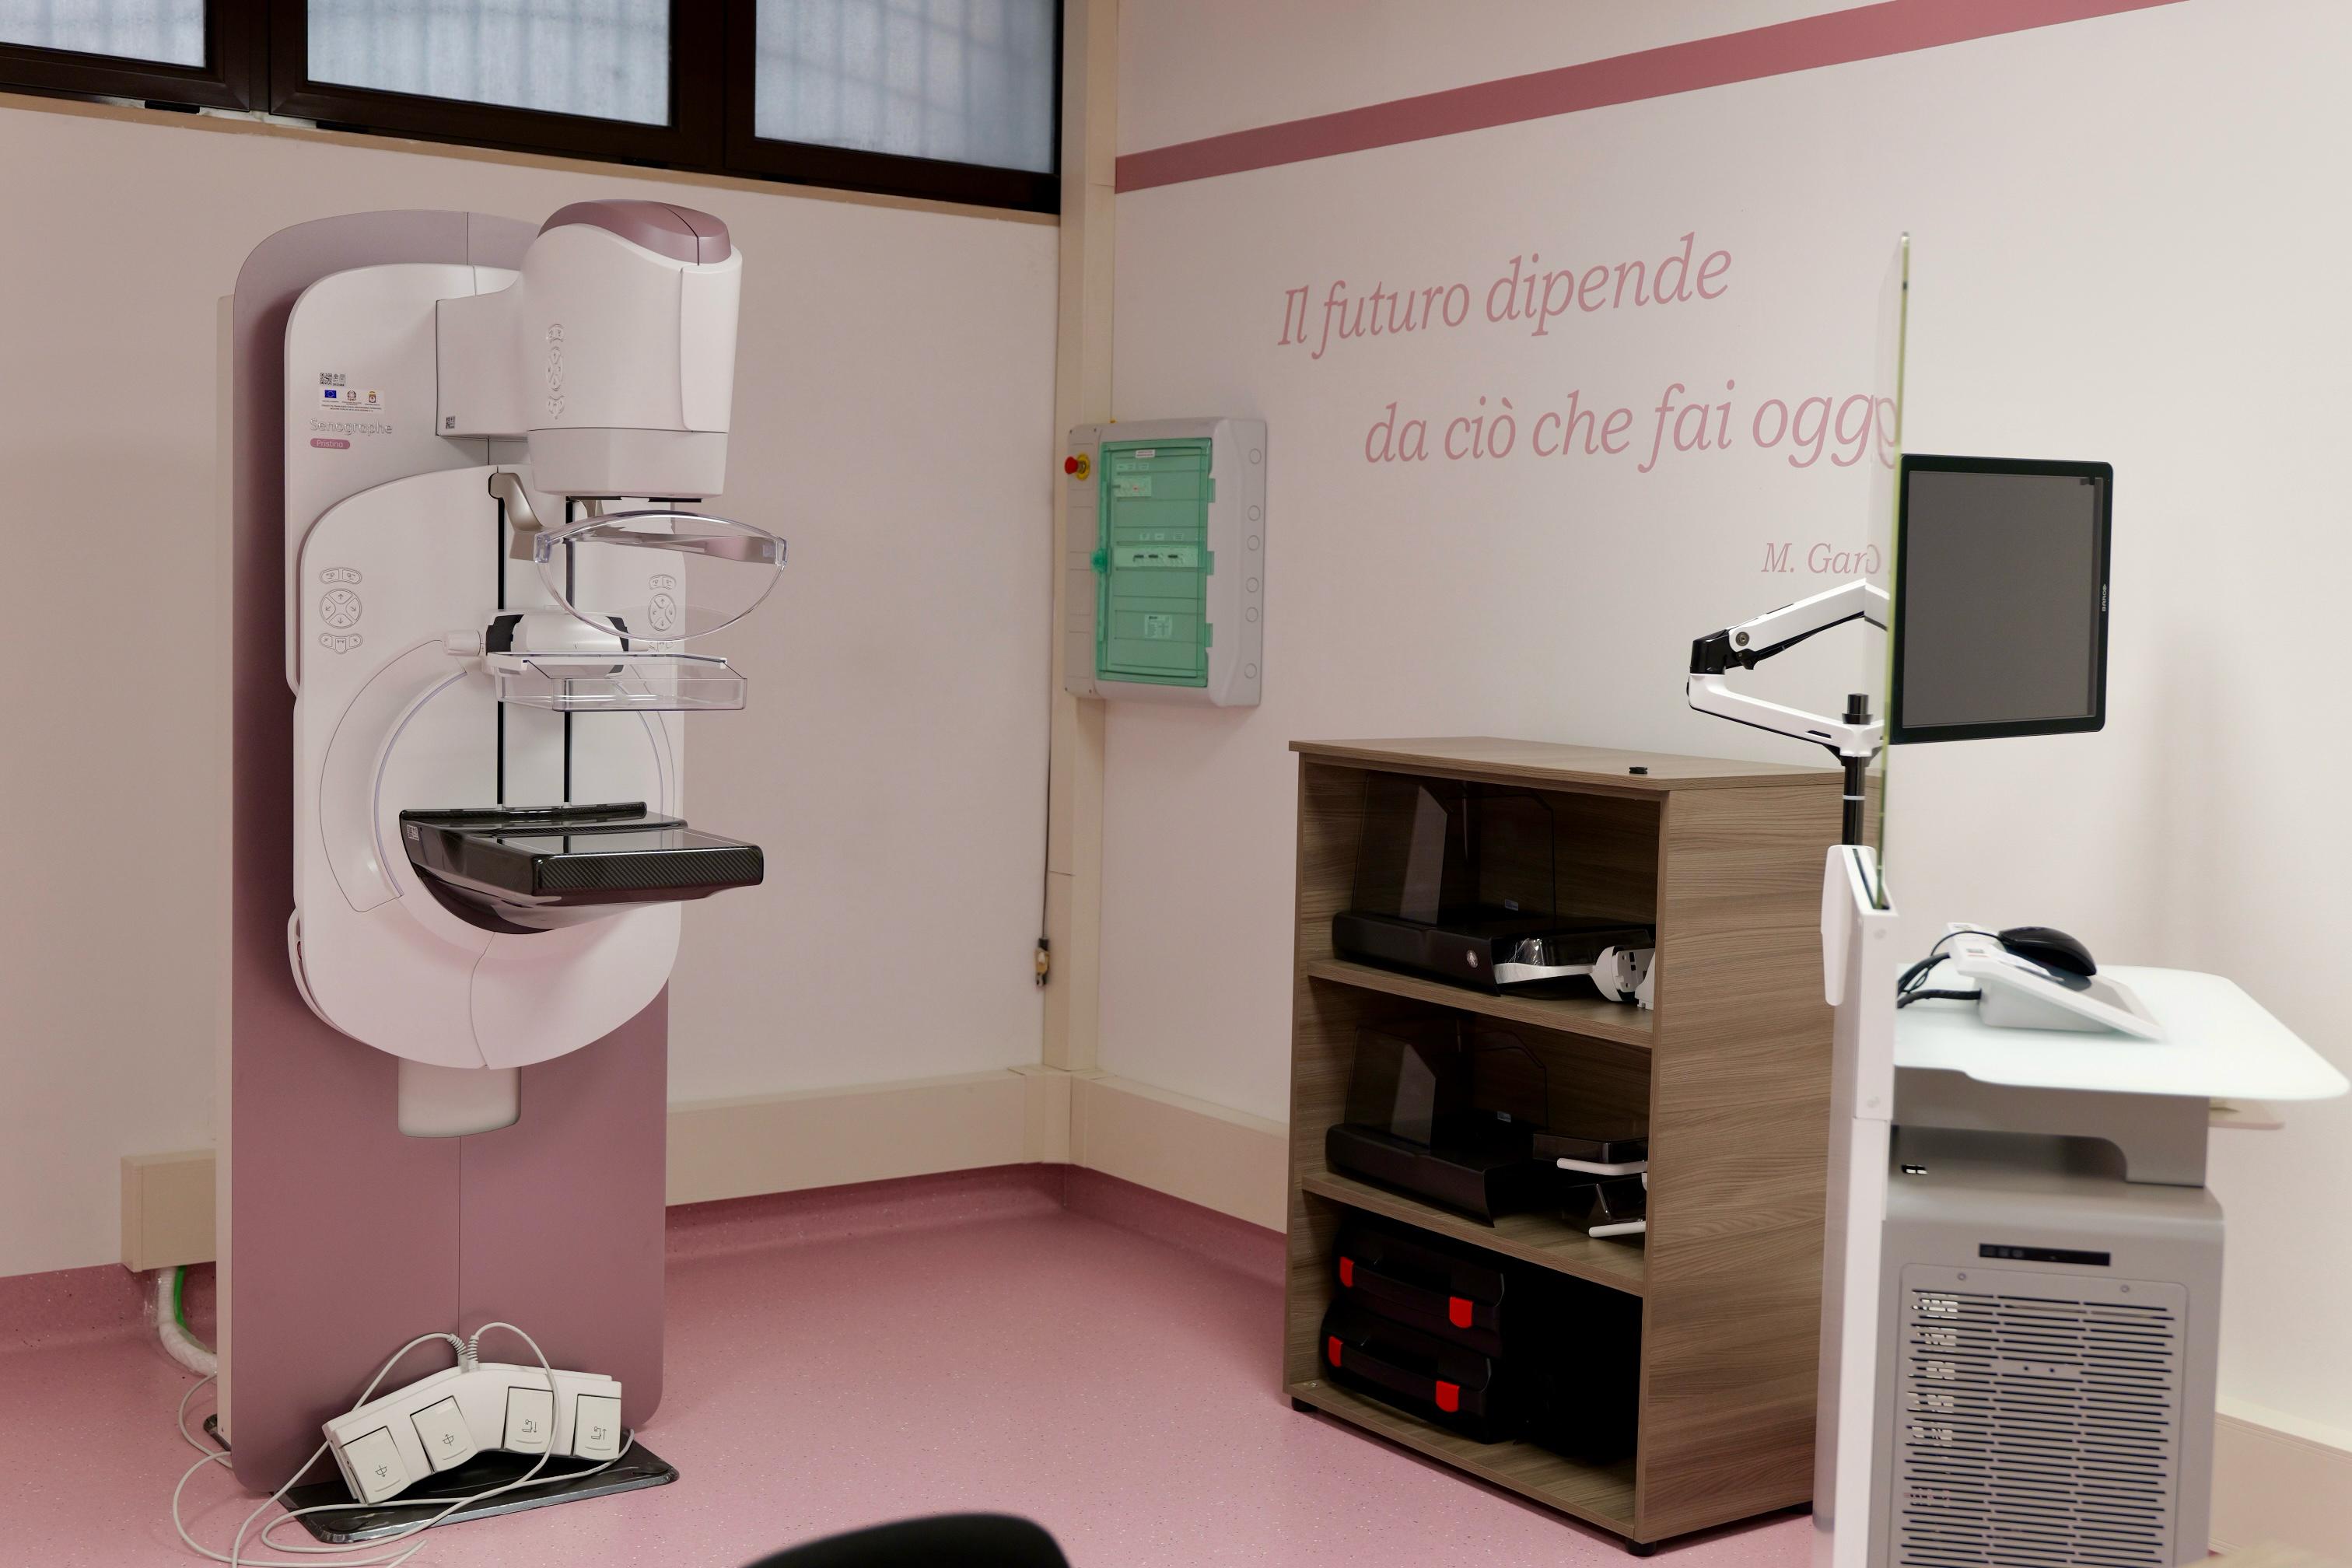 Galleria Un nuovo centro Screening con mammografo digitale 3D nel cuore di Bari: sarà a disposizione di 10mila donne residenti nei quartieri Madonnella, Libertà, Bari Murat e Città vecchia - Diapositiva 6 di 10